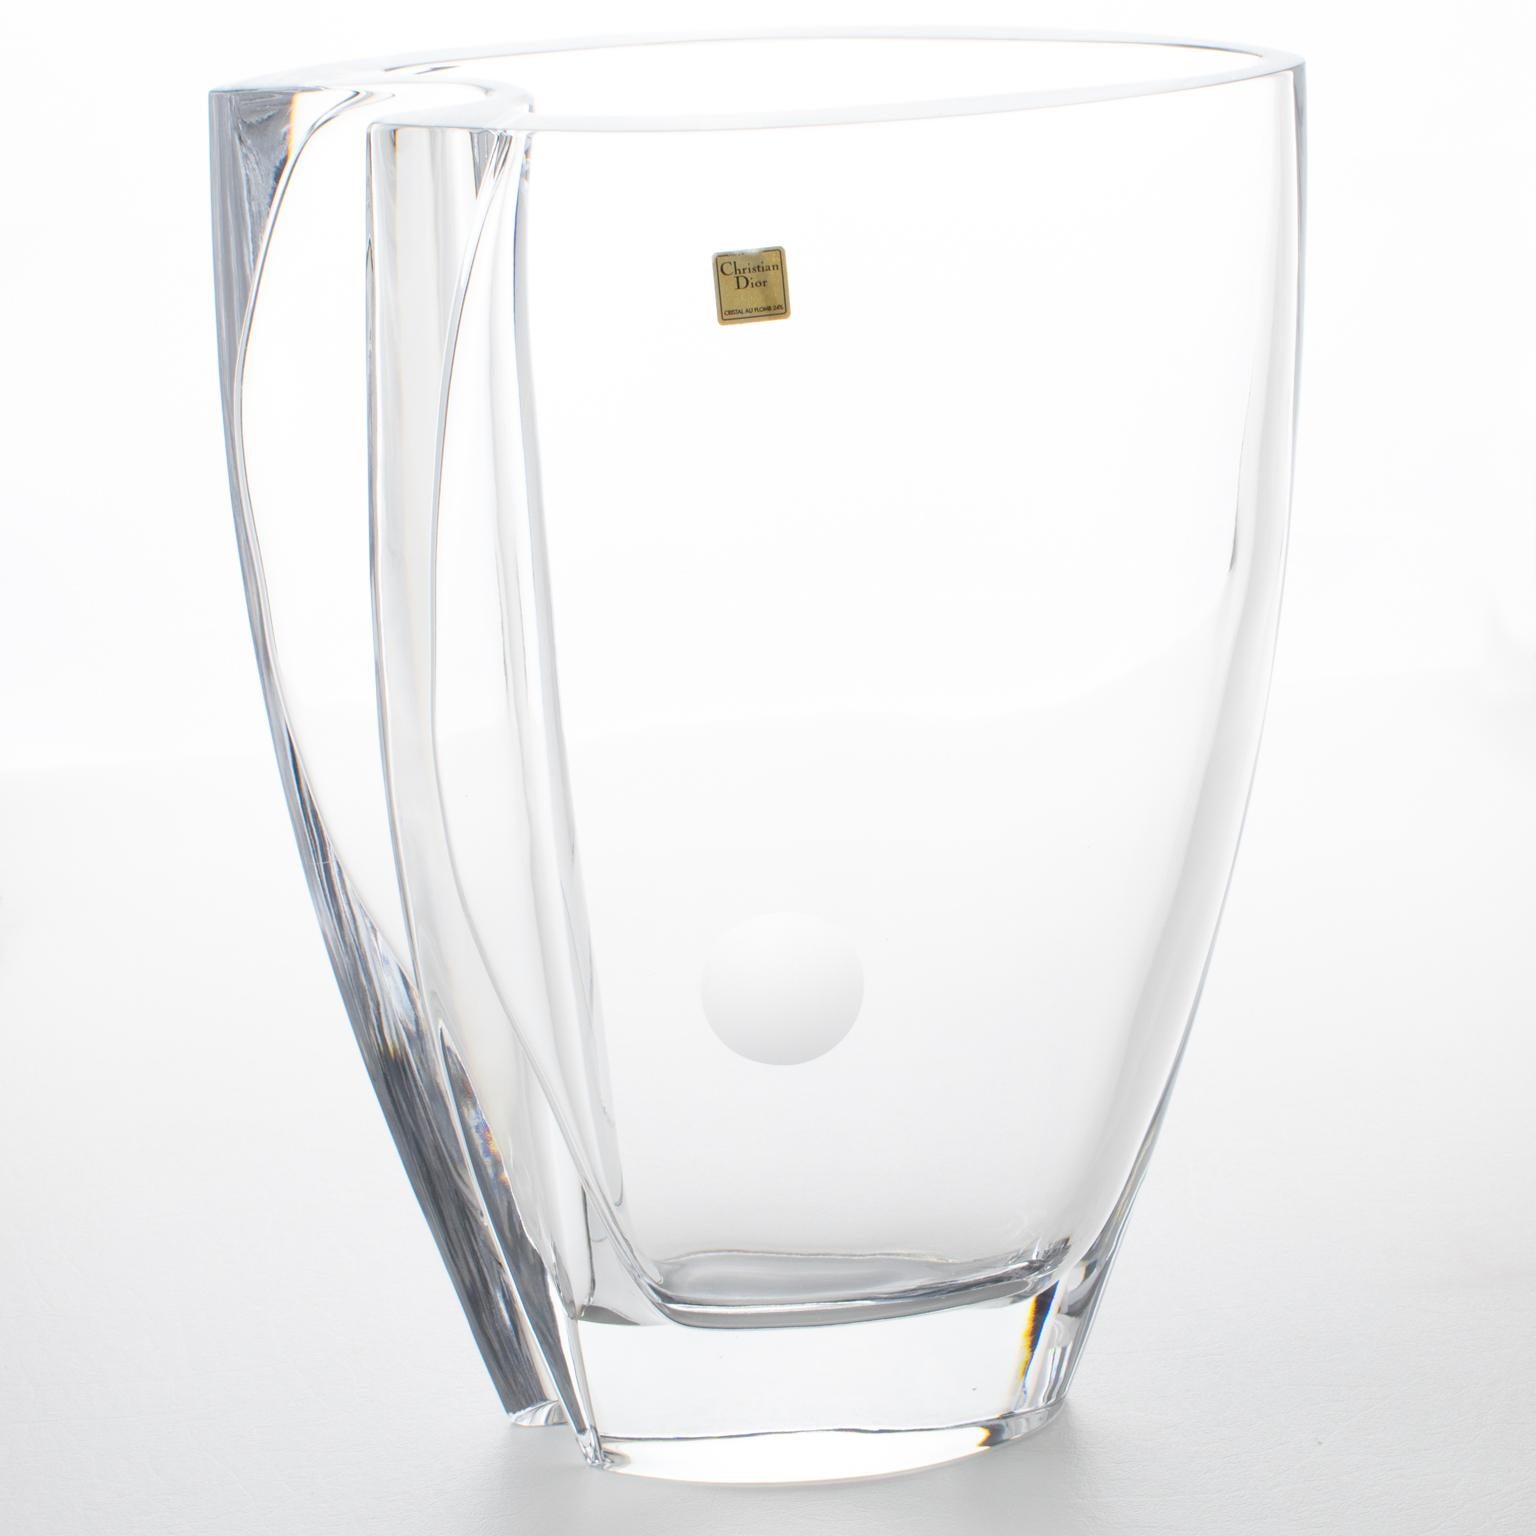 Diese prächtige Kristallvase wurde in den 1980er Jahren für die Christian Dior Home Collection'S in Italien entworfen. Das monumentale Glaskunstwerk hat eine glatte, stromlinienförmige, minimalistische, gewellte Form mit einem mattierten, geätzten